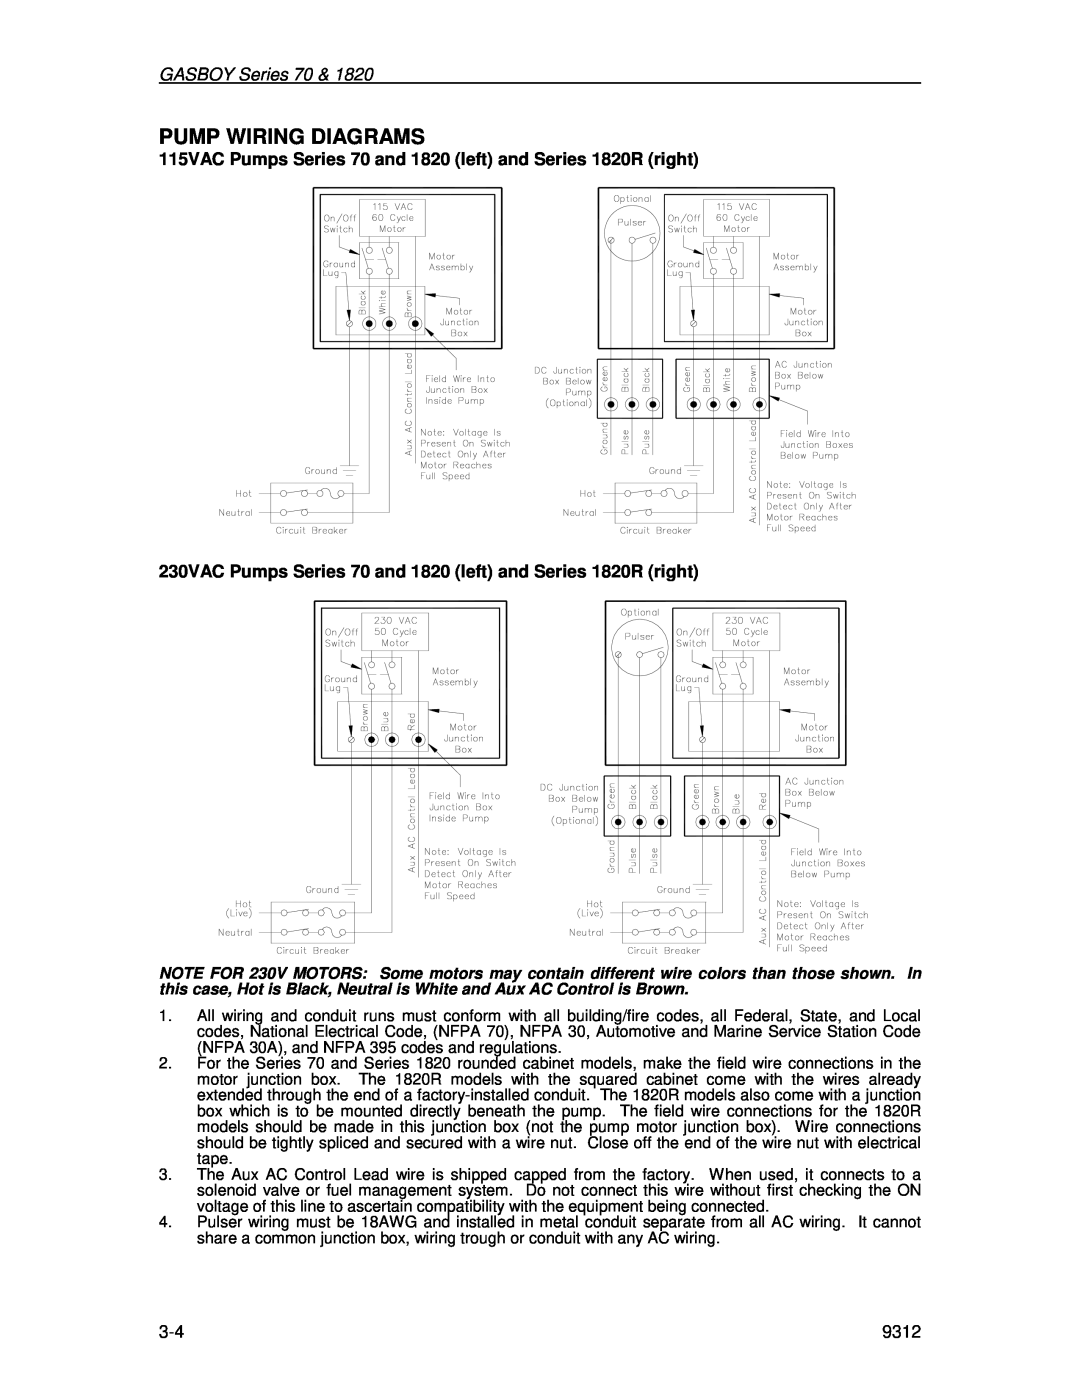 Husky 70 Series, 1800 Series manual Pump Wiring Diagrams, GASBOY Series 